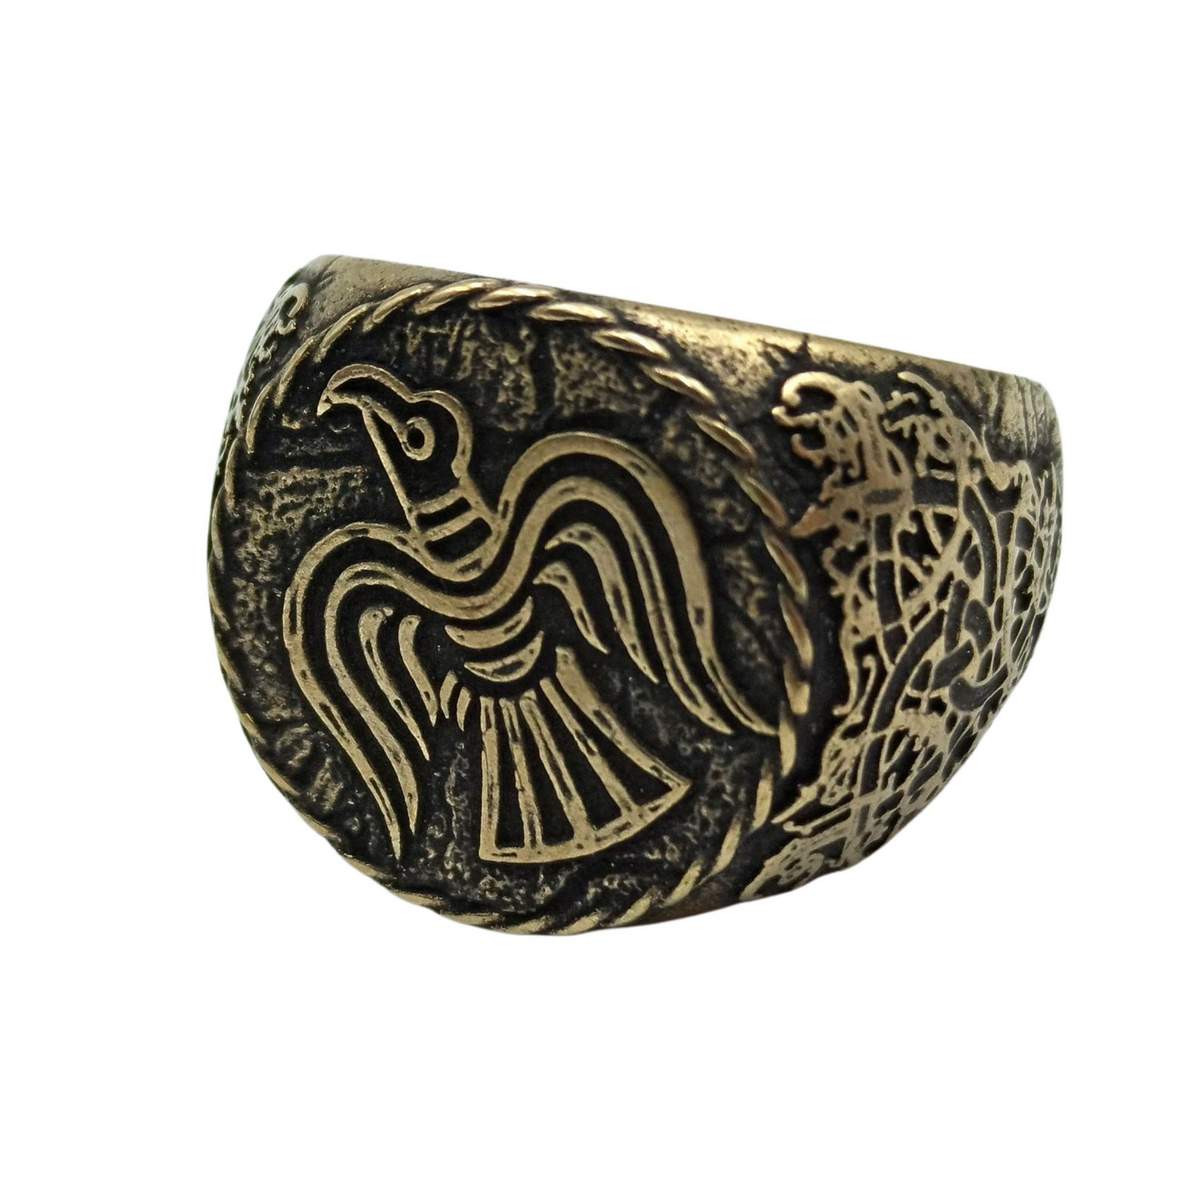 Raven banner bronze ring